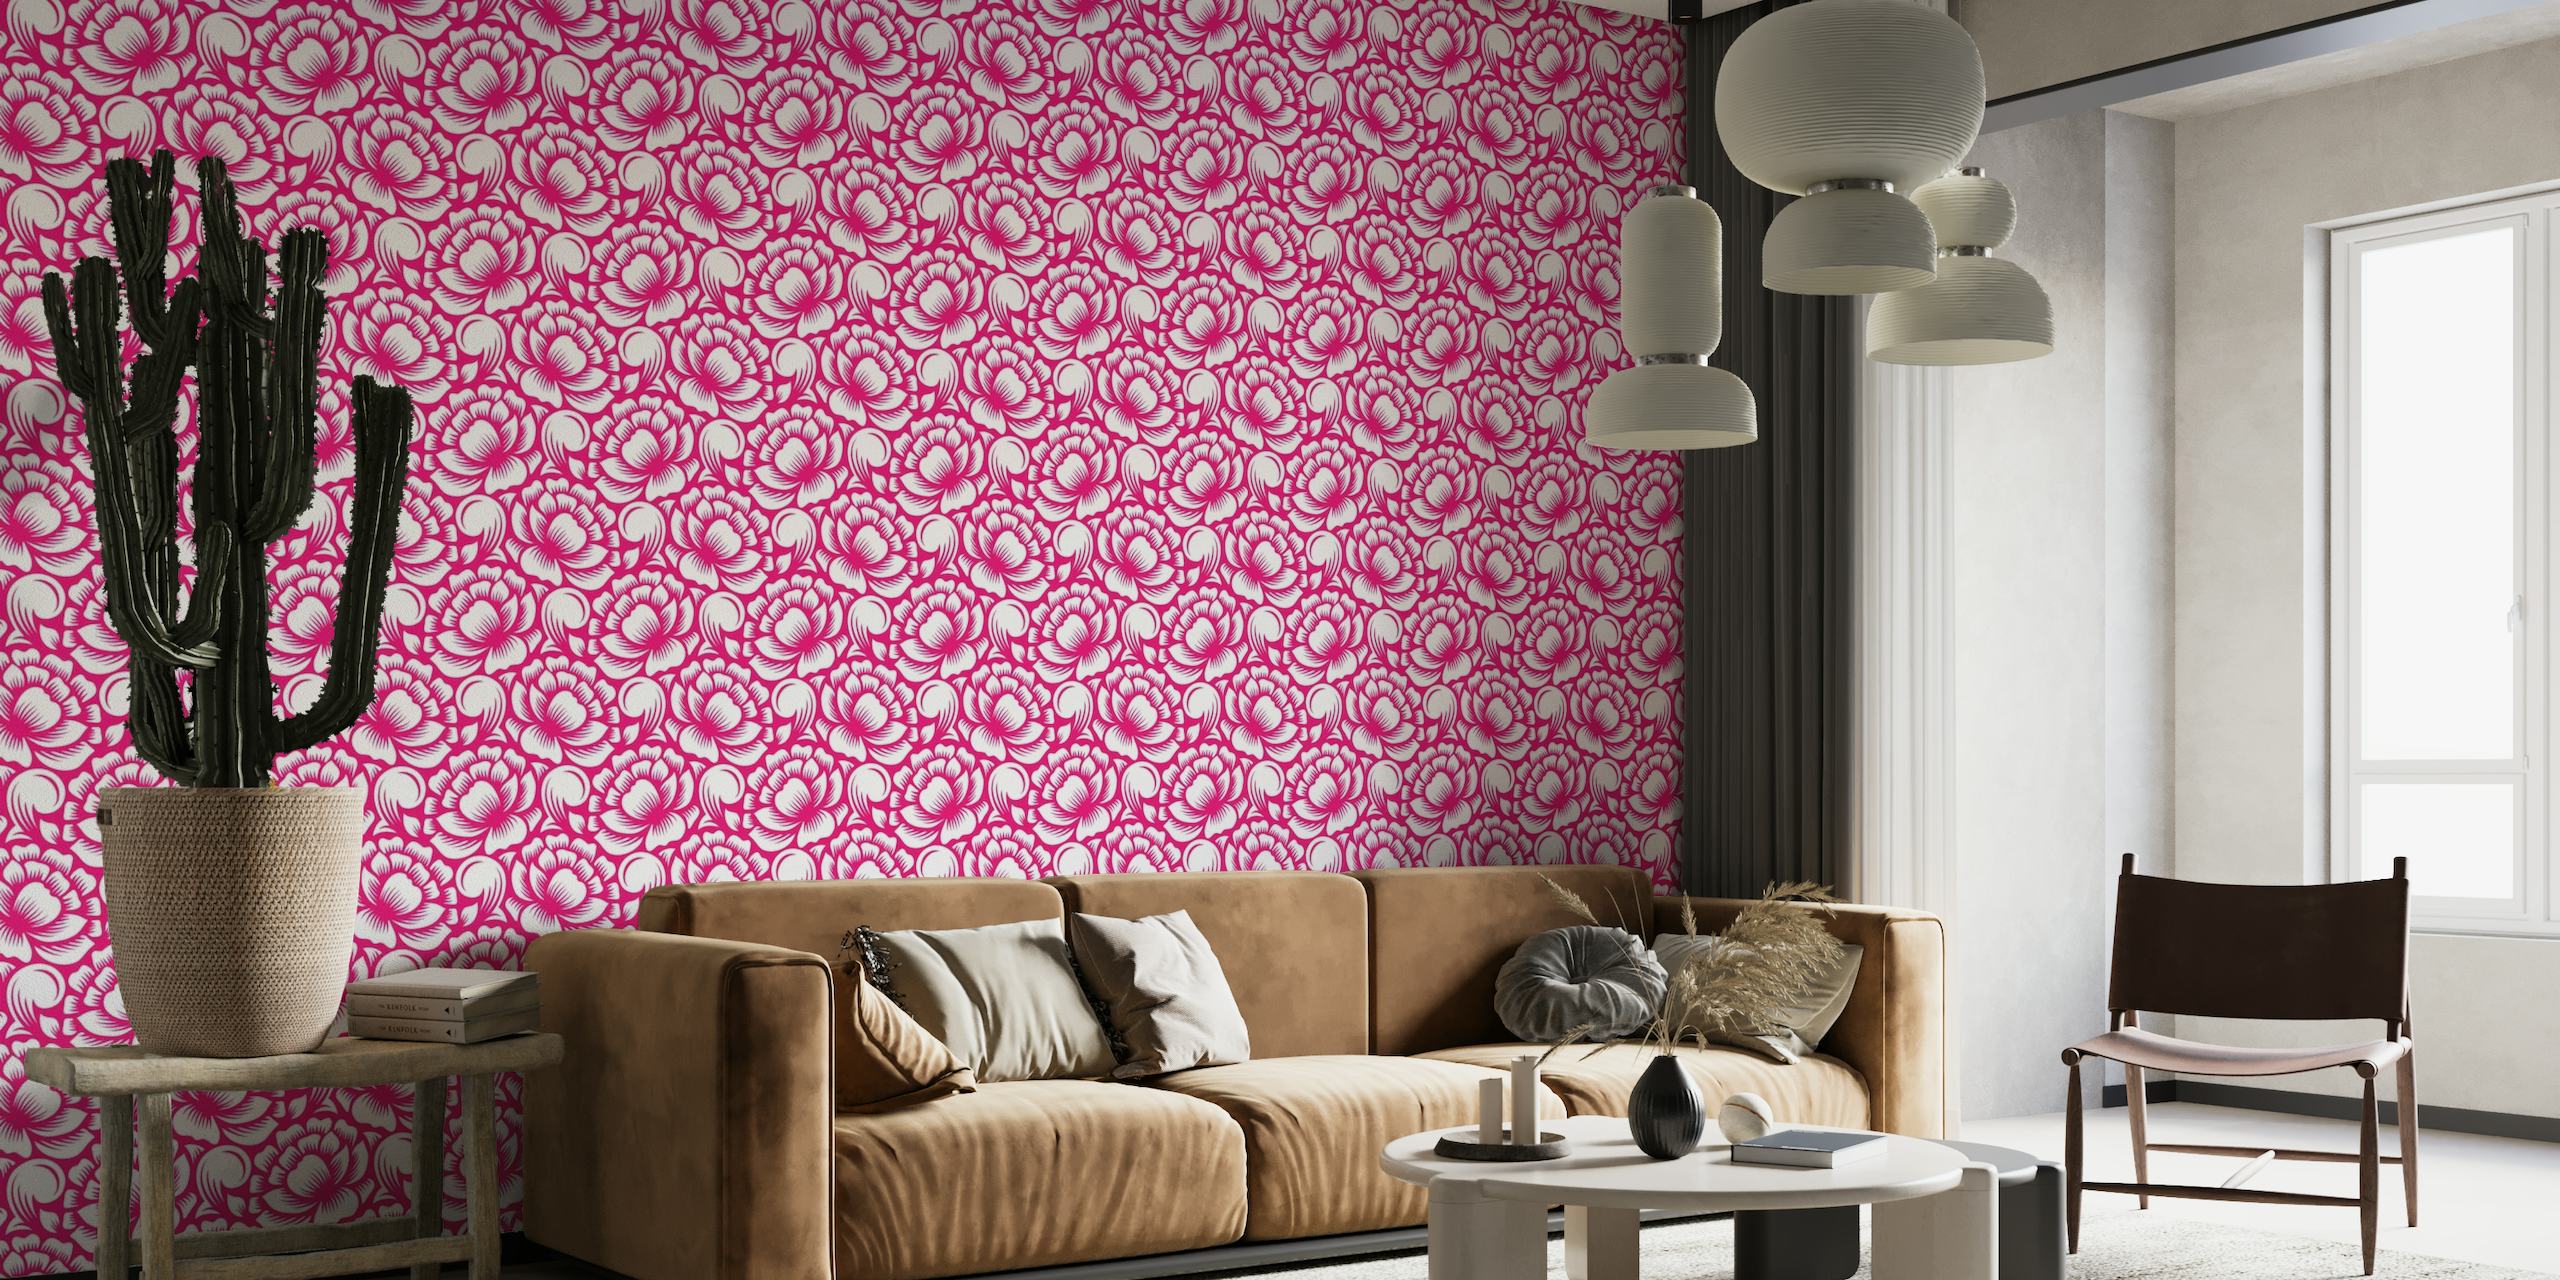 Mural de parede viva magenta com silhuetas de flores para uma decoração interior elegante